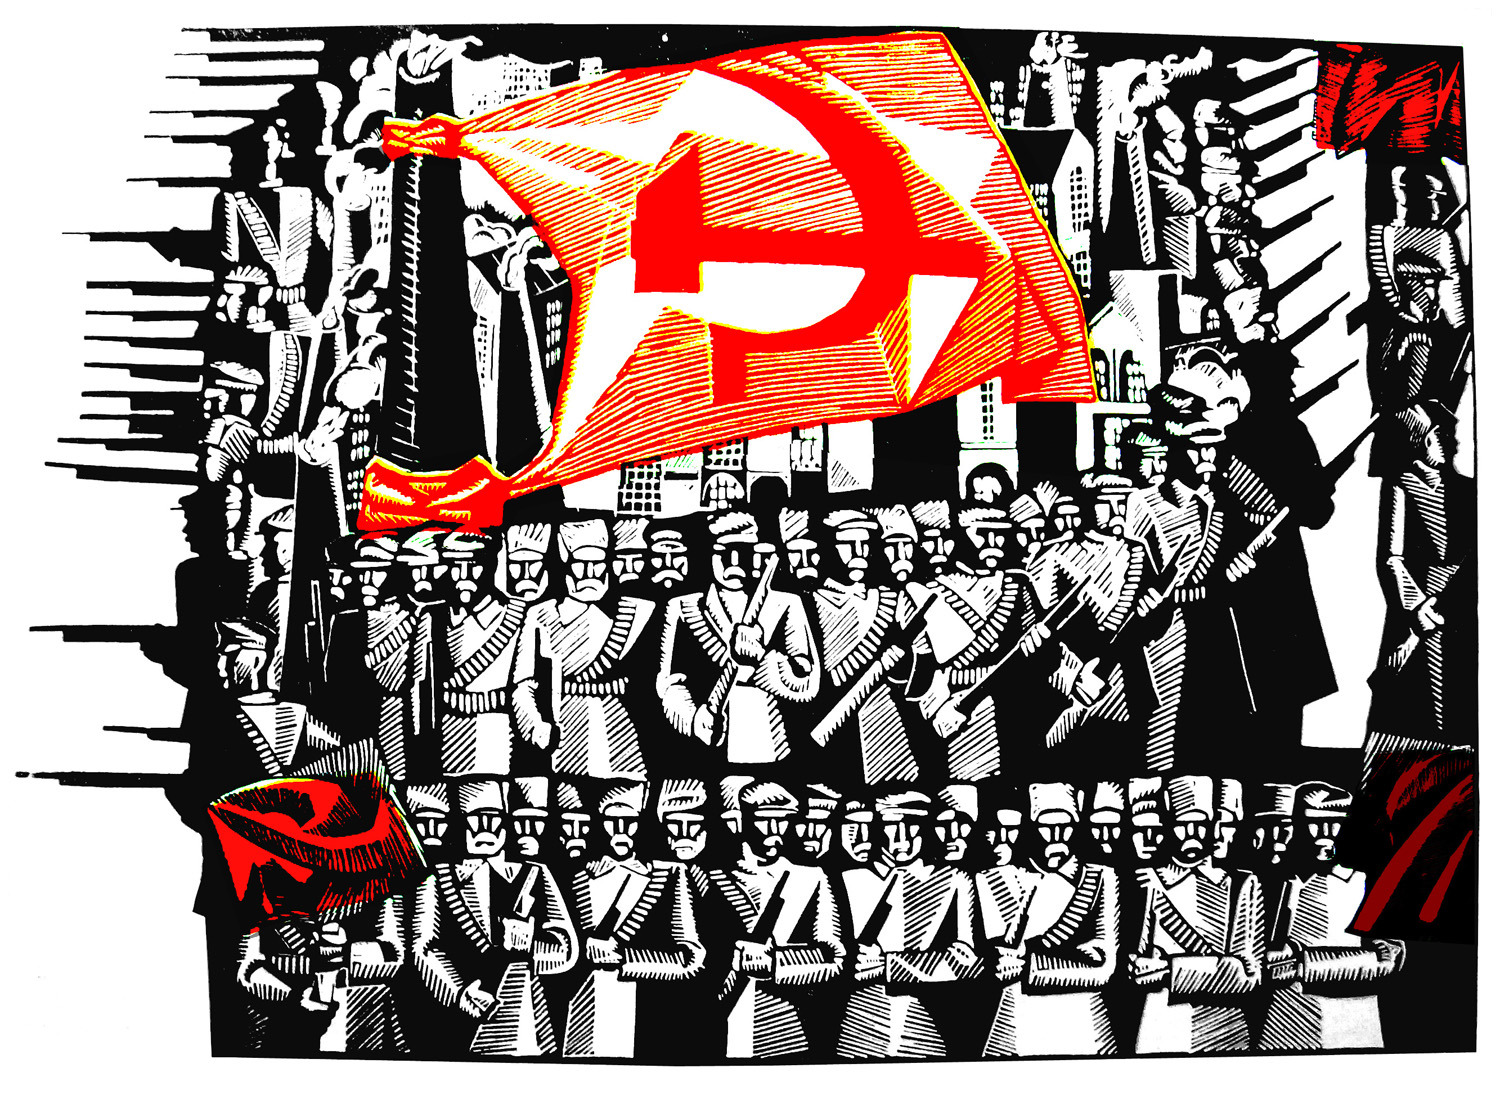 Великая Октябрьская Социалистическая революция плакат